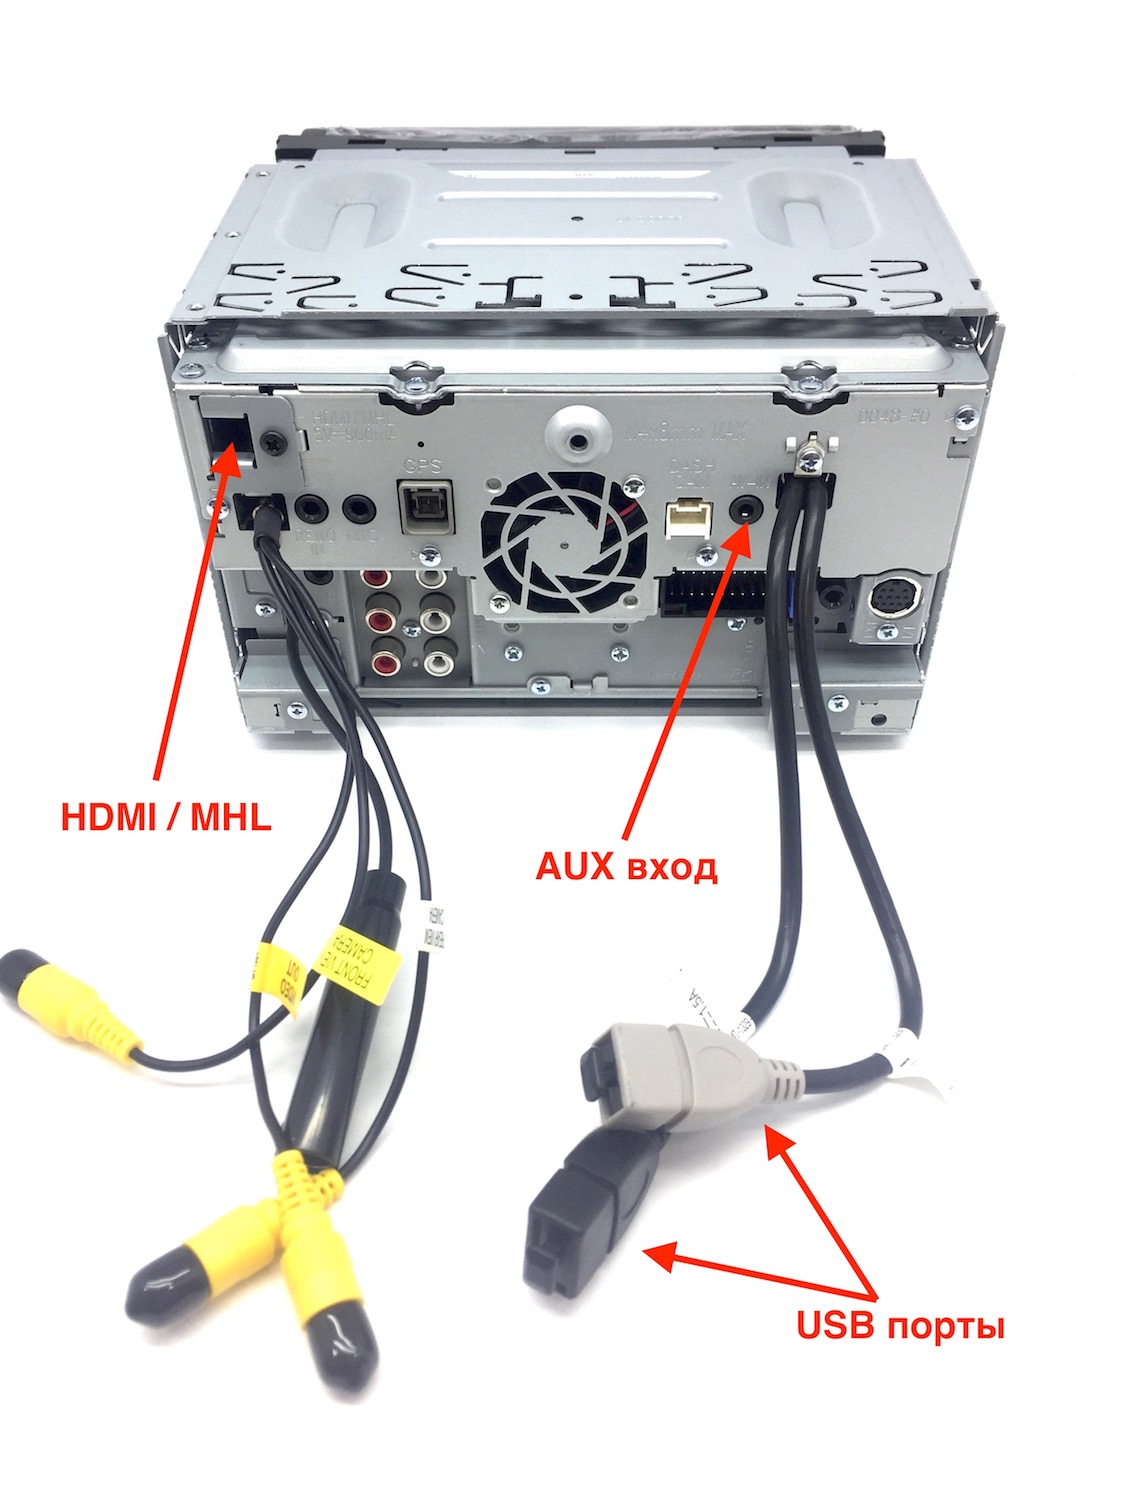 удлинитель позволяет подключить входы USB, AUX и HDMI расположенные на задней панели магнитолы